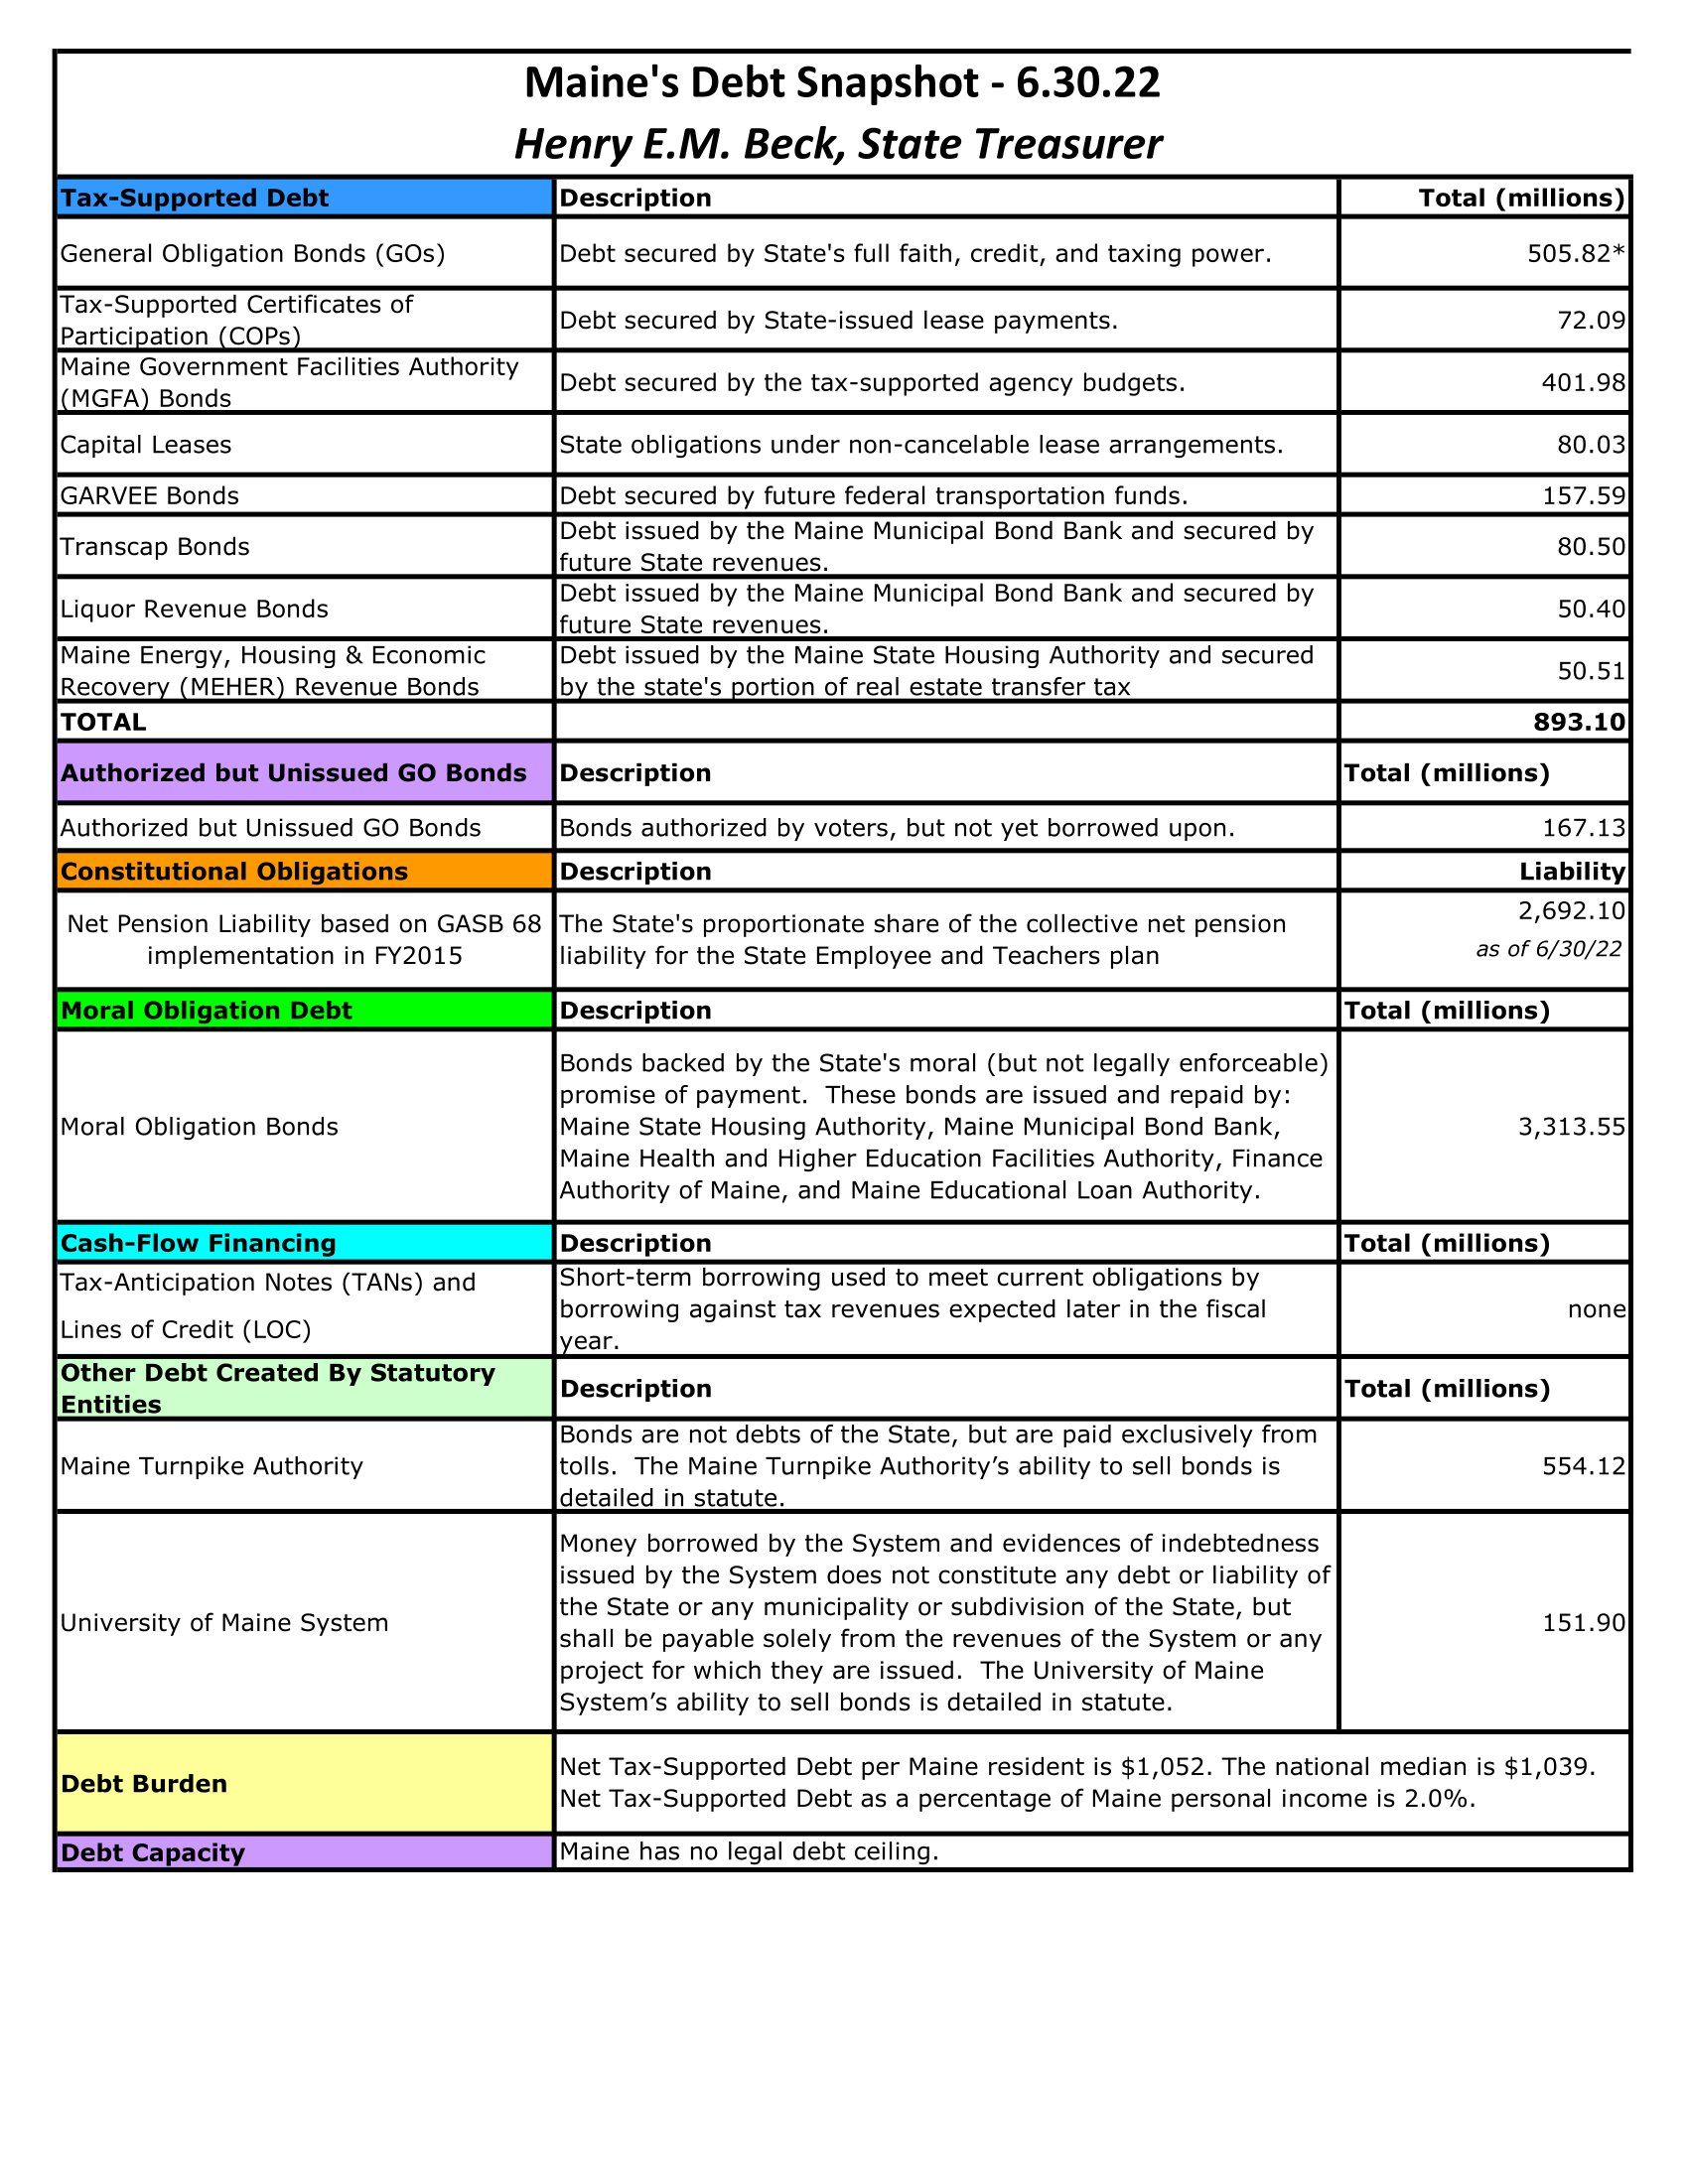 Maine Debt Summary FY22